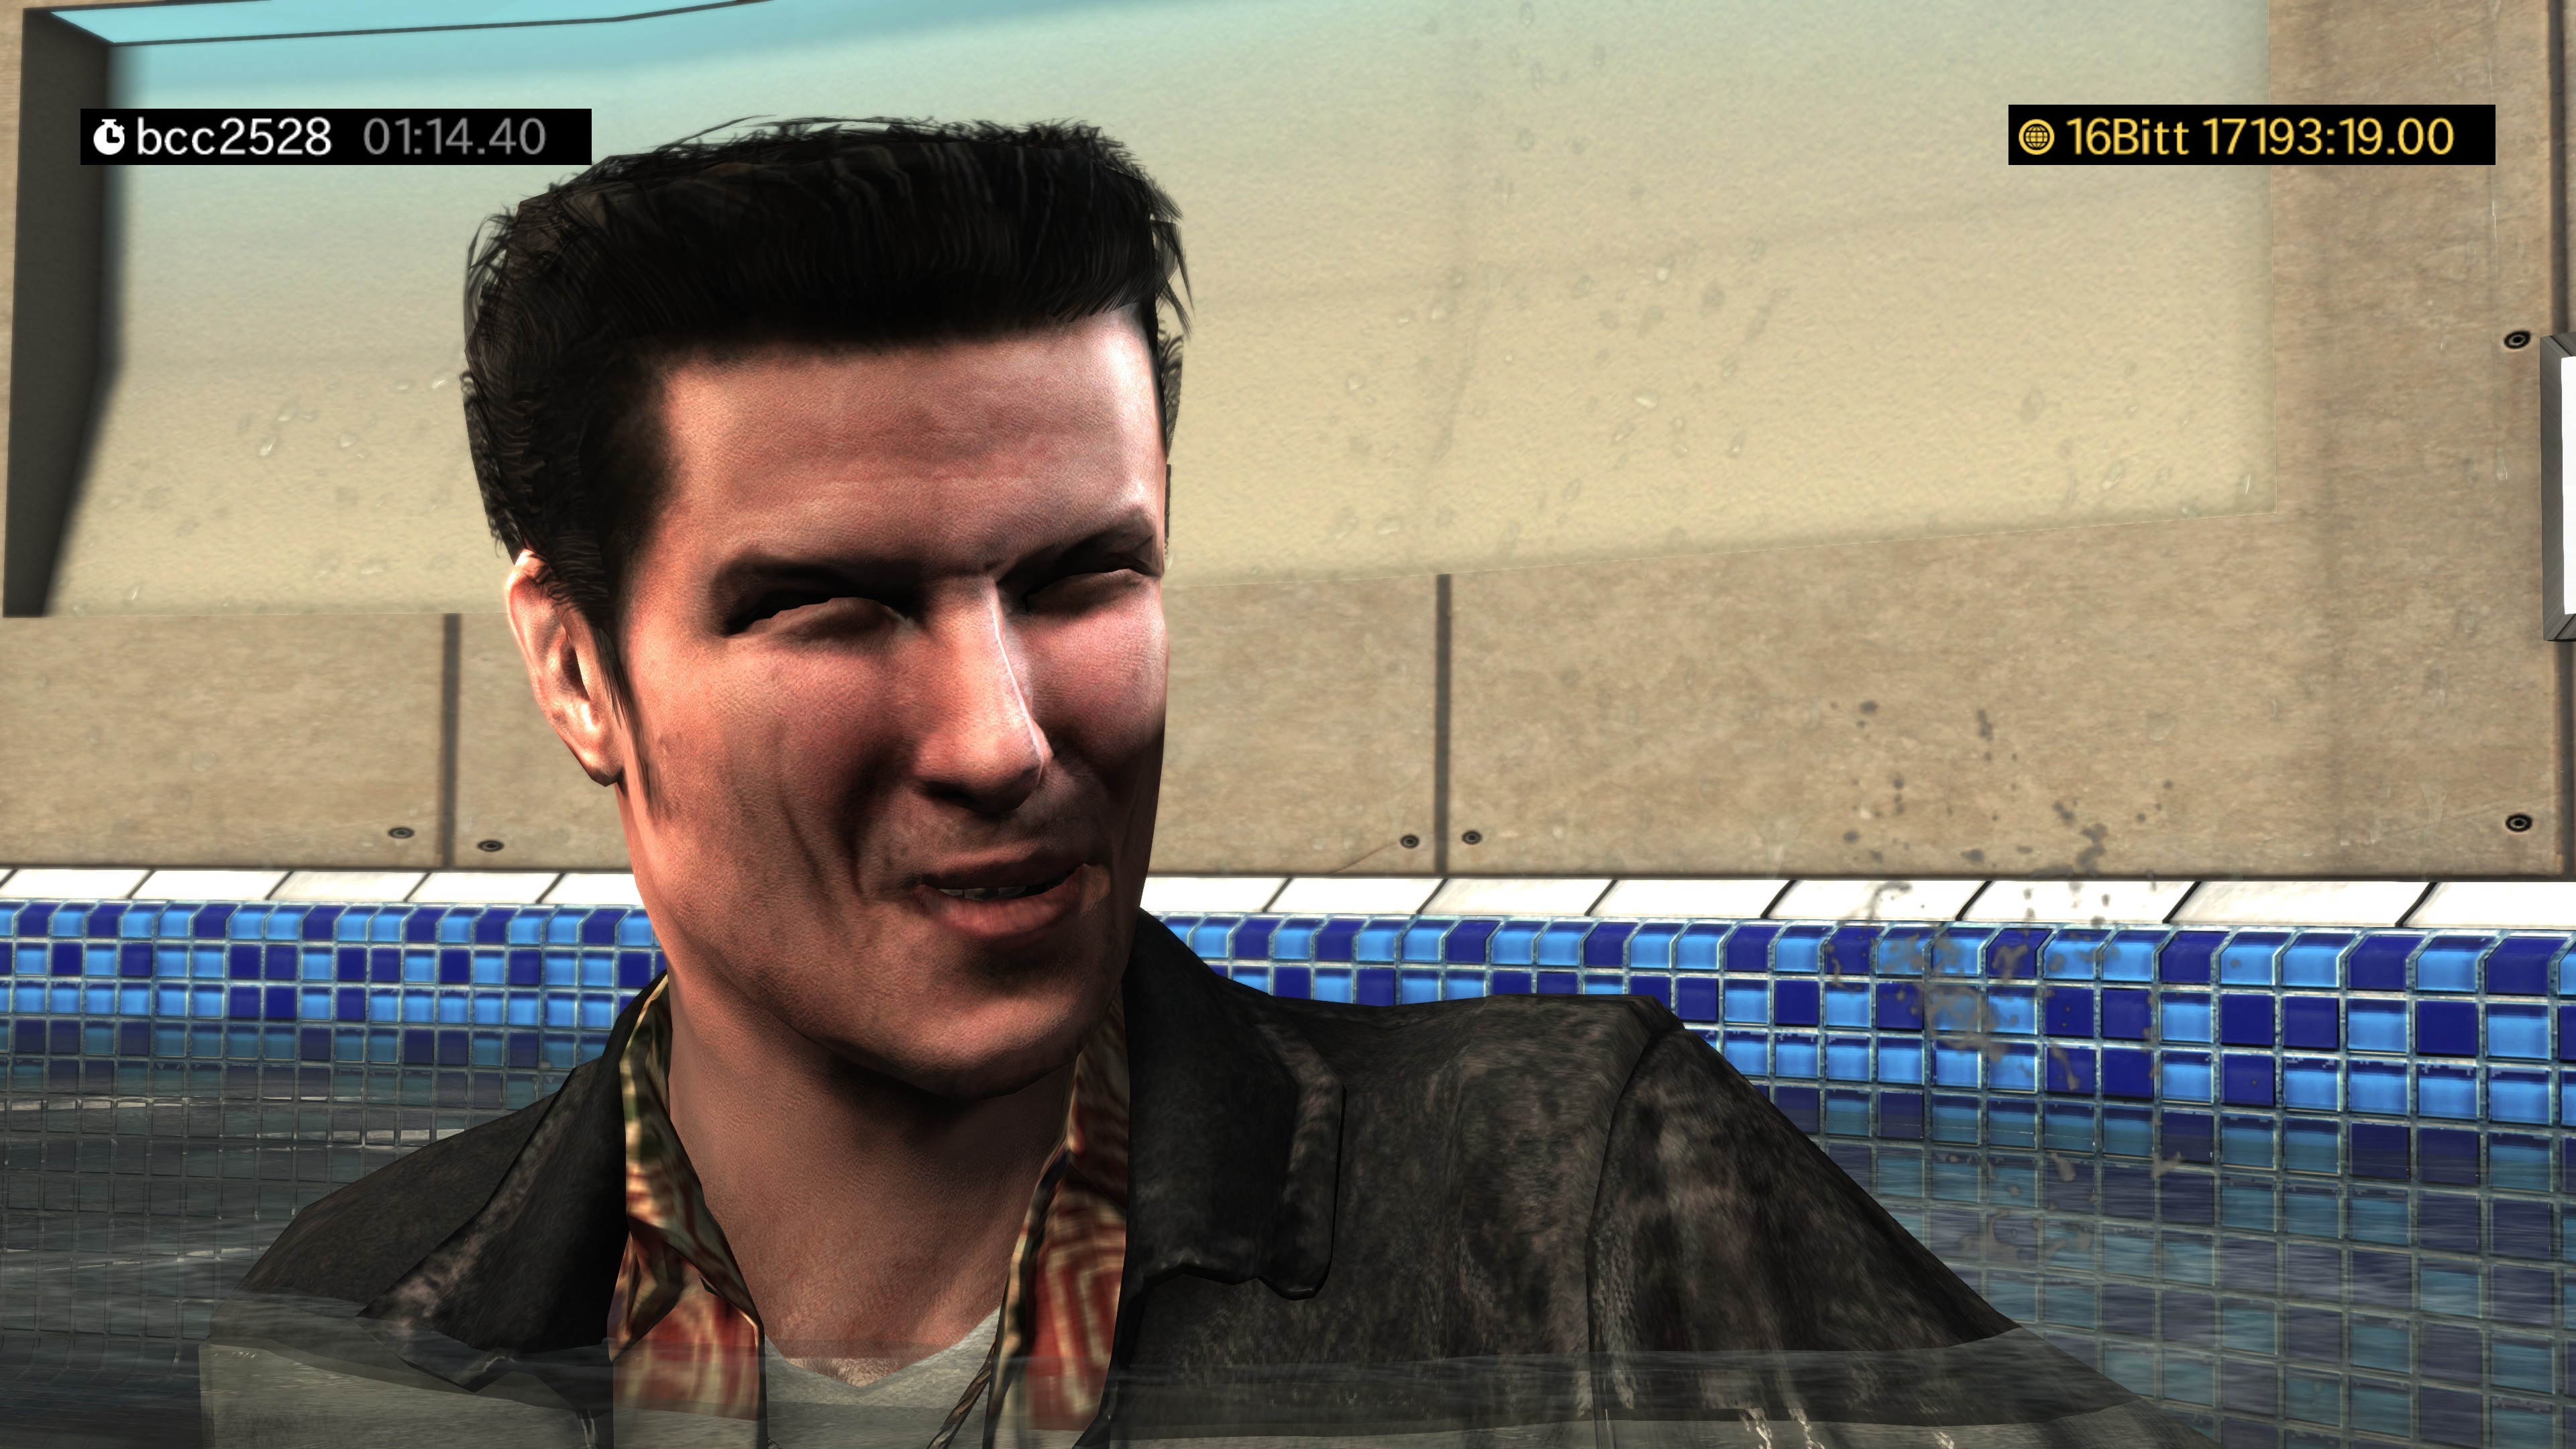 c Max Payne 3の初代マックスペインモデル 思い出の中の 孤独を紛らわすためニヤケ顔を浮かべるマックスペイン その人なままのはずなのに 実際に初代の彼の顔を確認するとそこまでニヤケていないという 画像1枚目が初代 それ以外3 担当モデラーは皆が